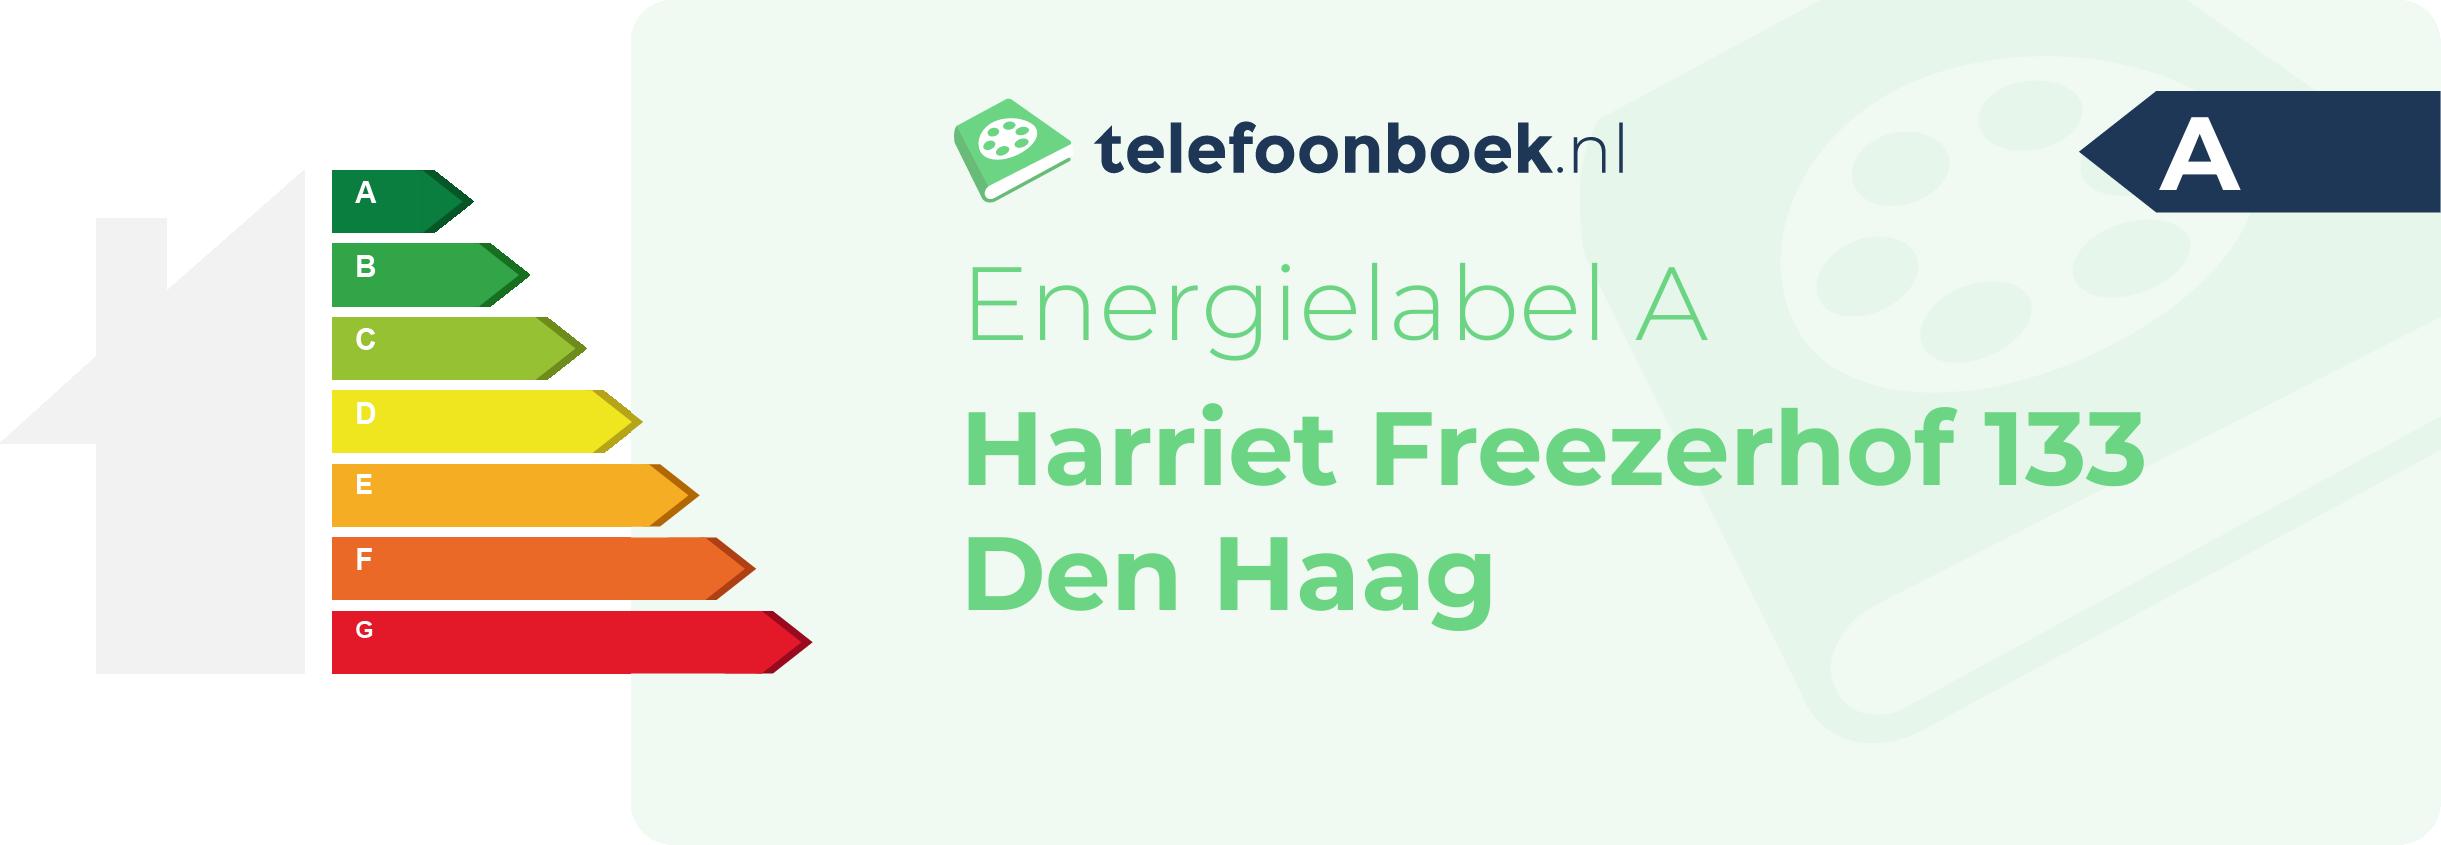 Energielabel Harriet Freezerhof 133 Den Haag